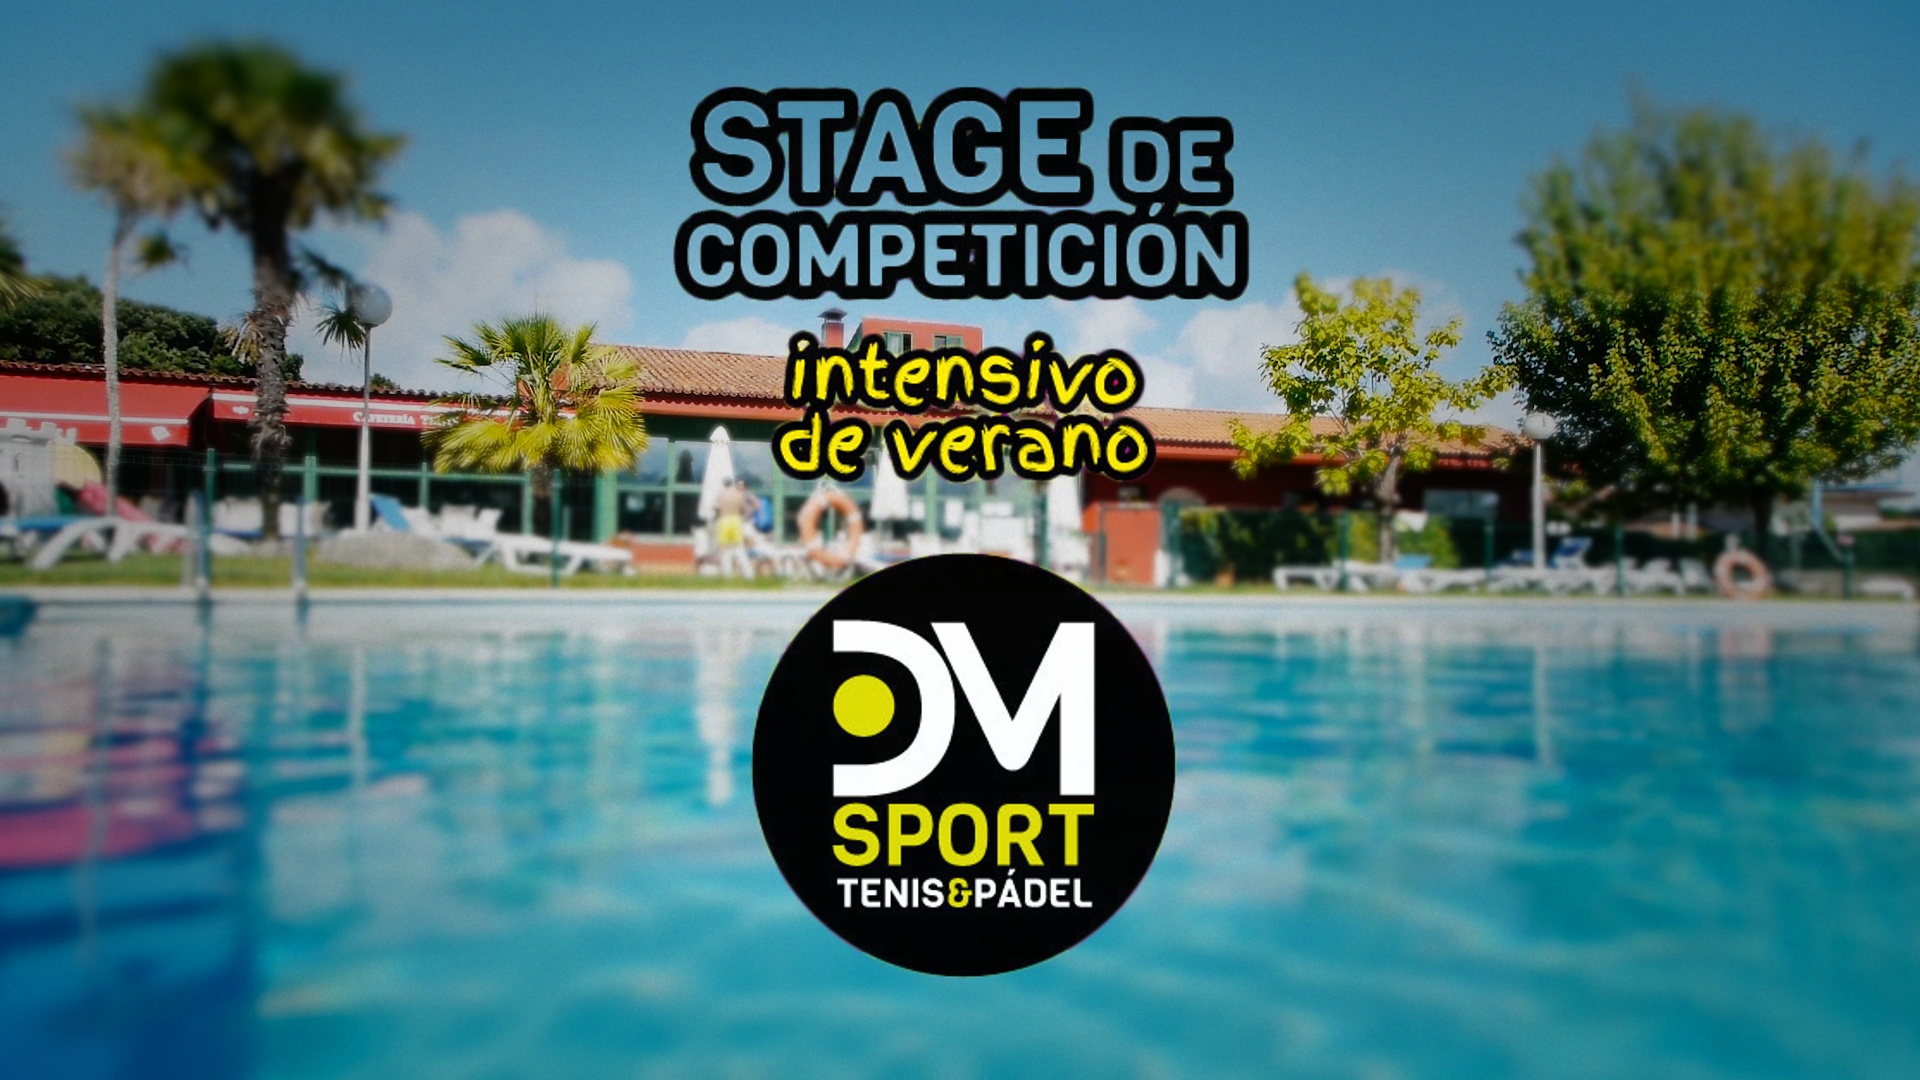 Stage de competición de verano DMsport